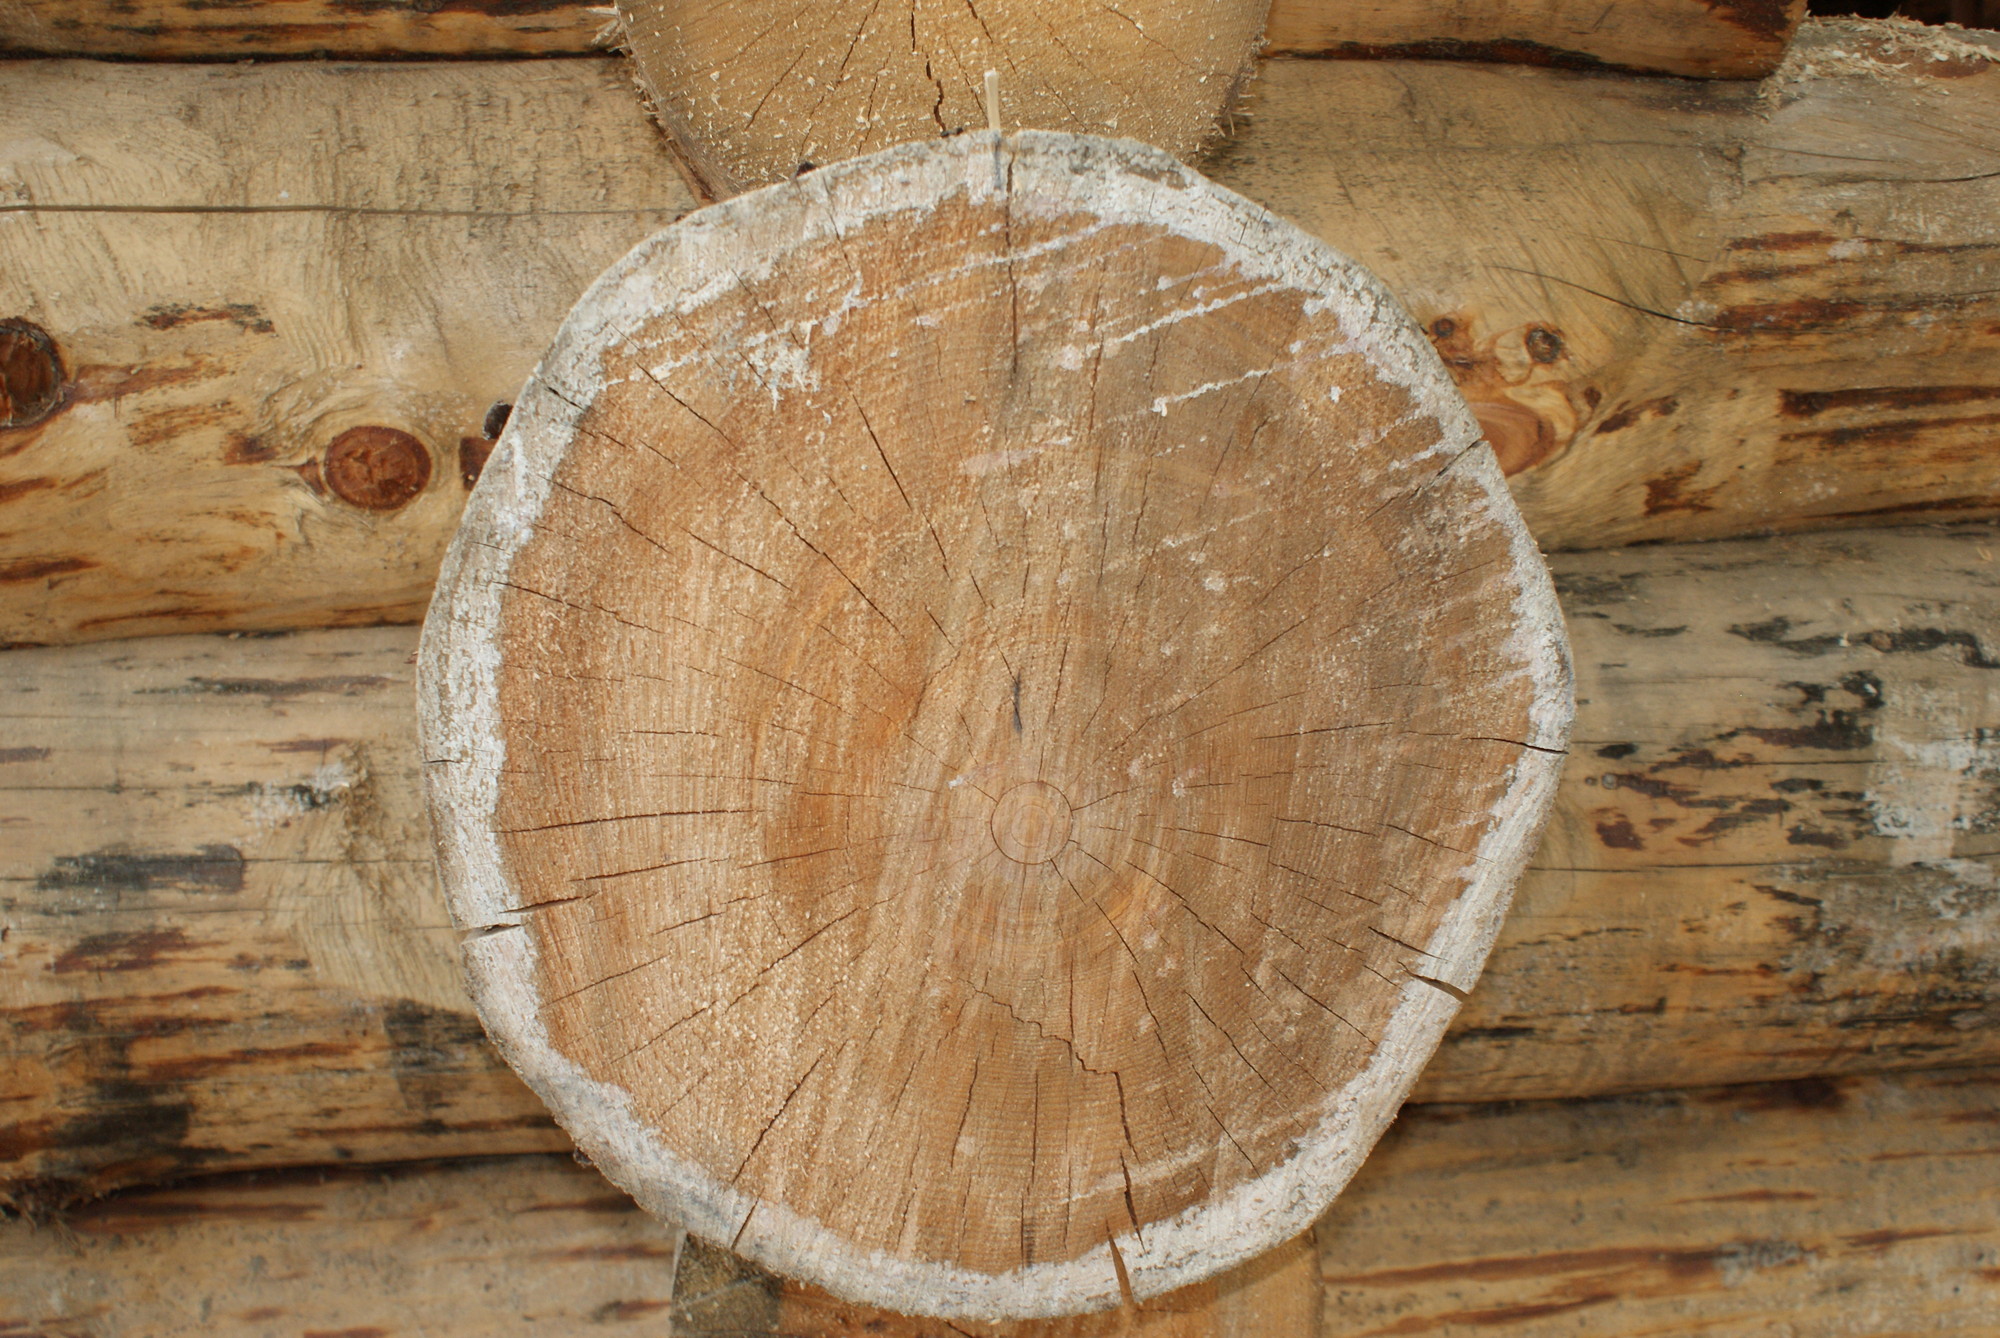 Маркетинговый анализ рынка деревообработки: строганного пиломатериала, малых архитектурных форм, деревянного домостроения. Актуальные данные за МАЙ 2017 3